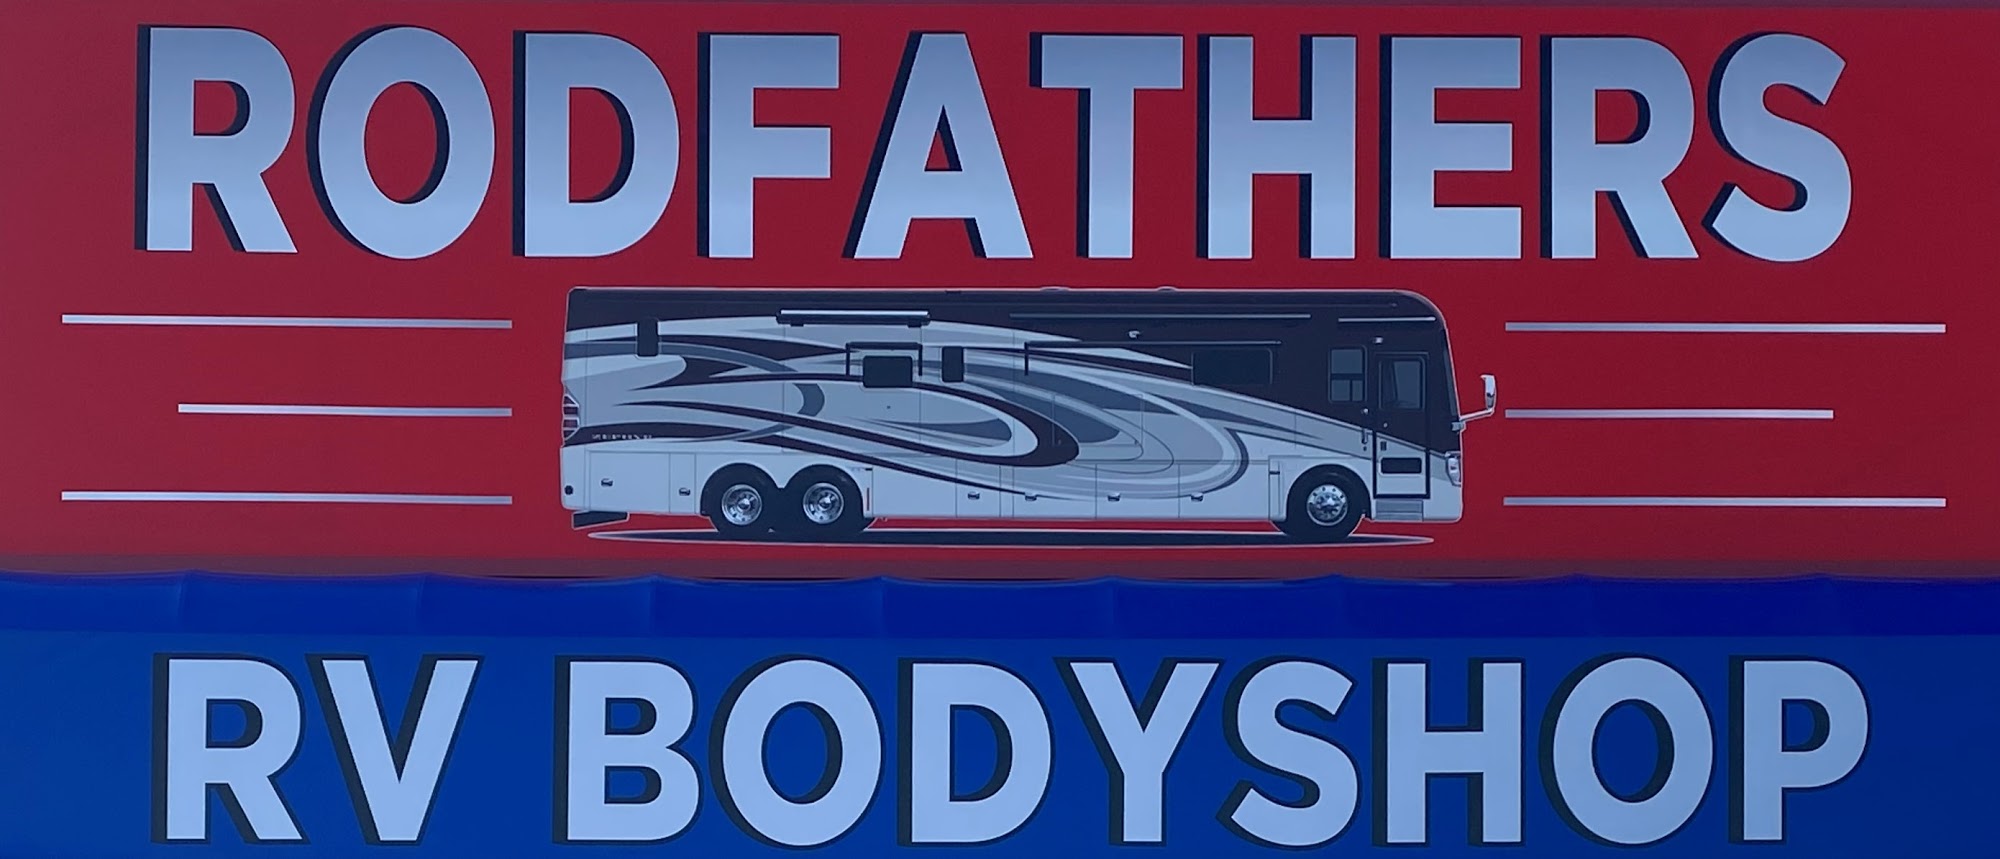 Rodfathers RV Body Shop